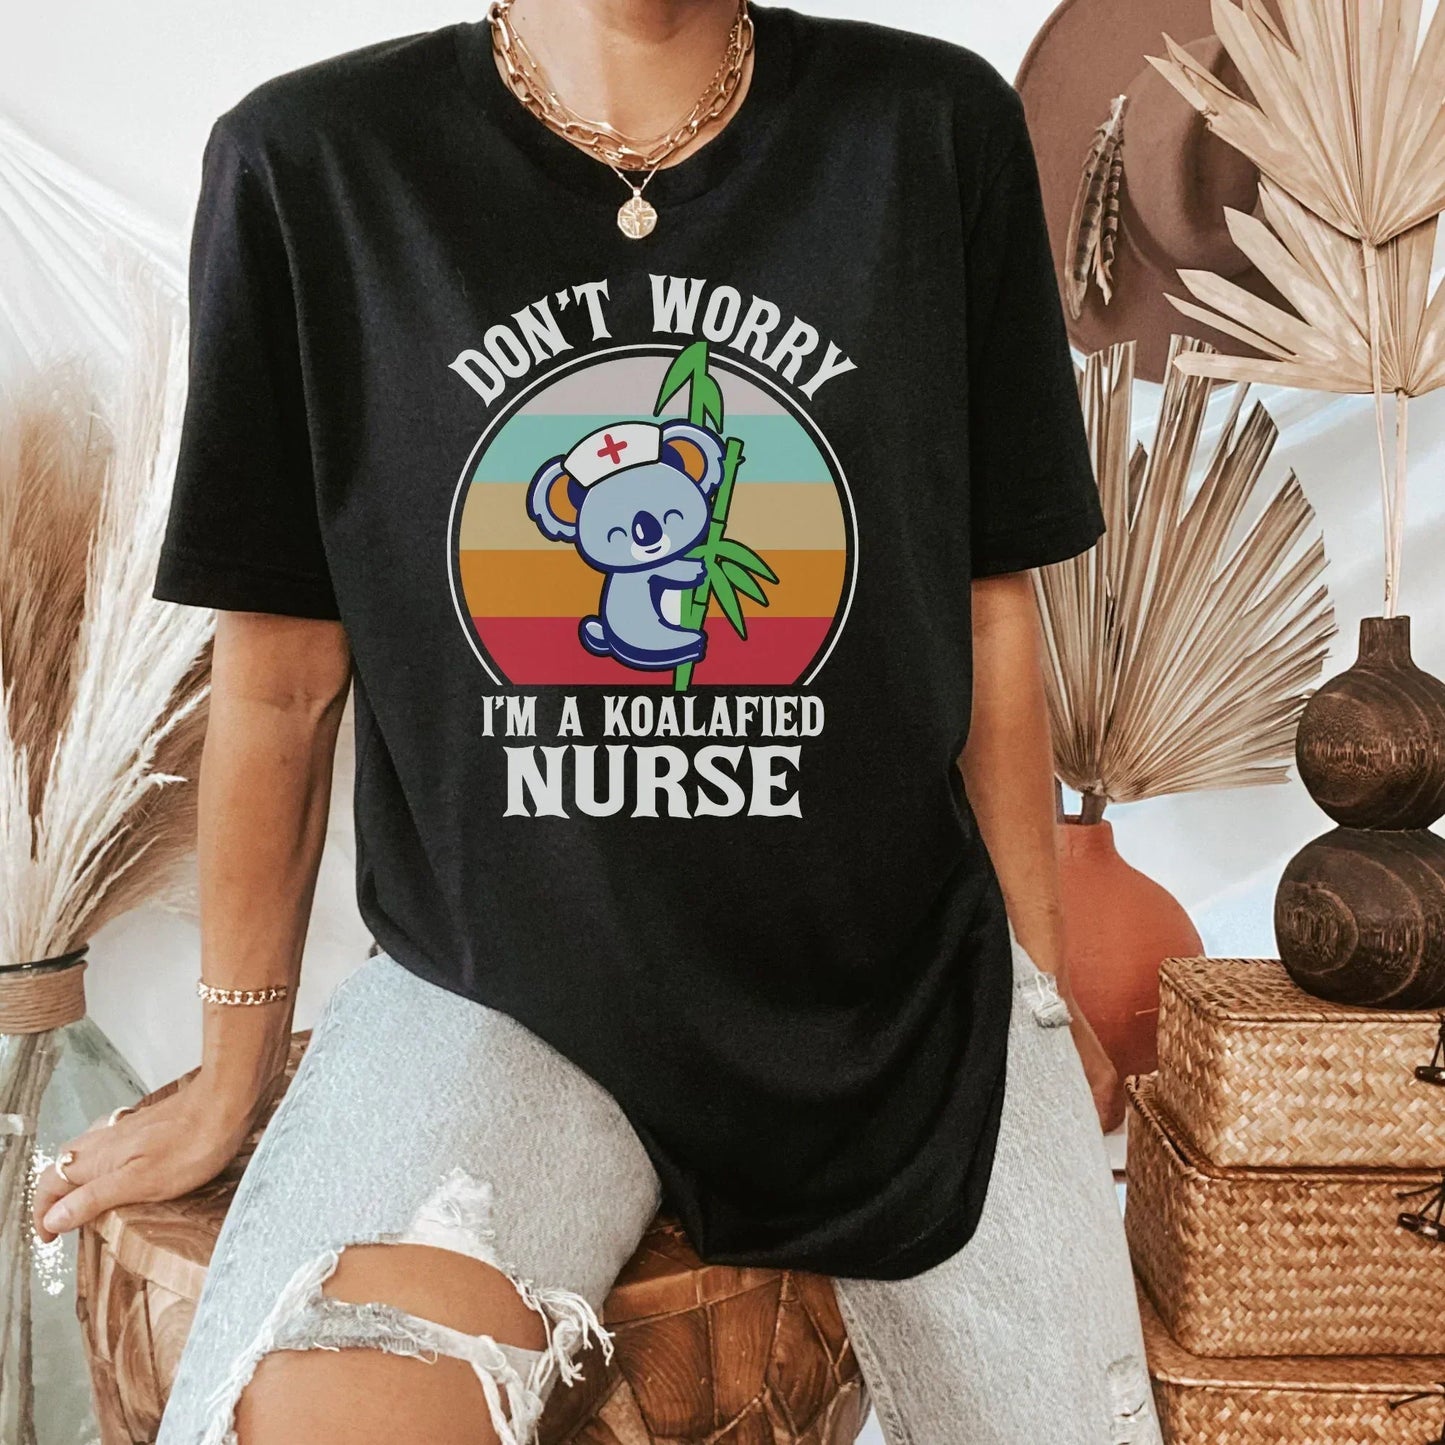 Kolafied, Registered Nurse Shirt, Nursing Student, Pediatric Nurse, ER Nurse Sweatshirt, Nurse Gift, Nurse Hoodie, Funny Nurse Shirt, Nurse Practitioner